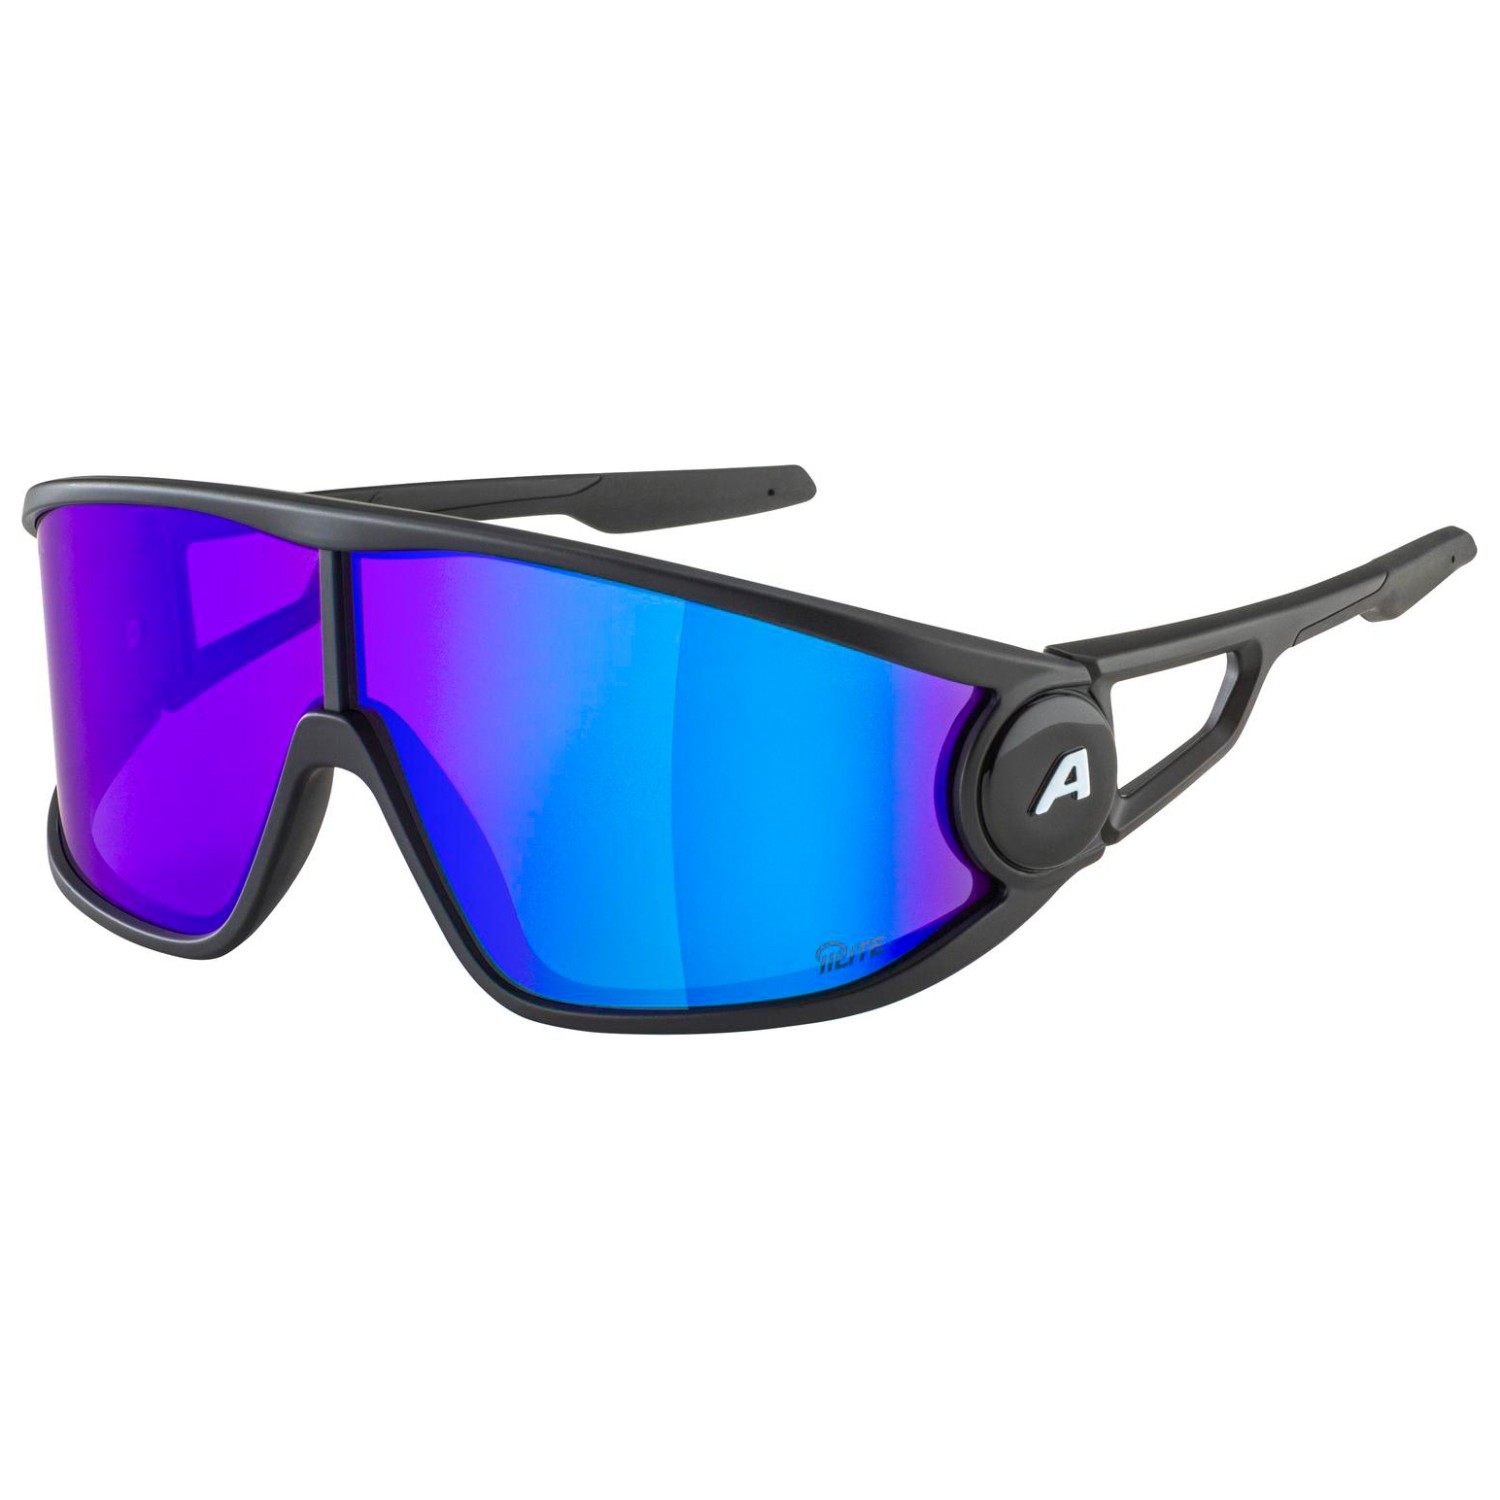 Солнцезащитные очки Alpina Legend Q Lite Cat 3, цвет Black Matt очки солнцезащитные alpina luzy белый пурпурный зеркальный a8571310